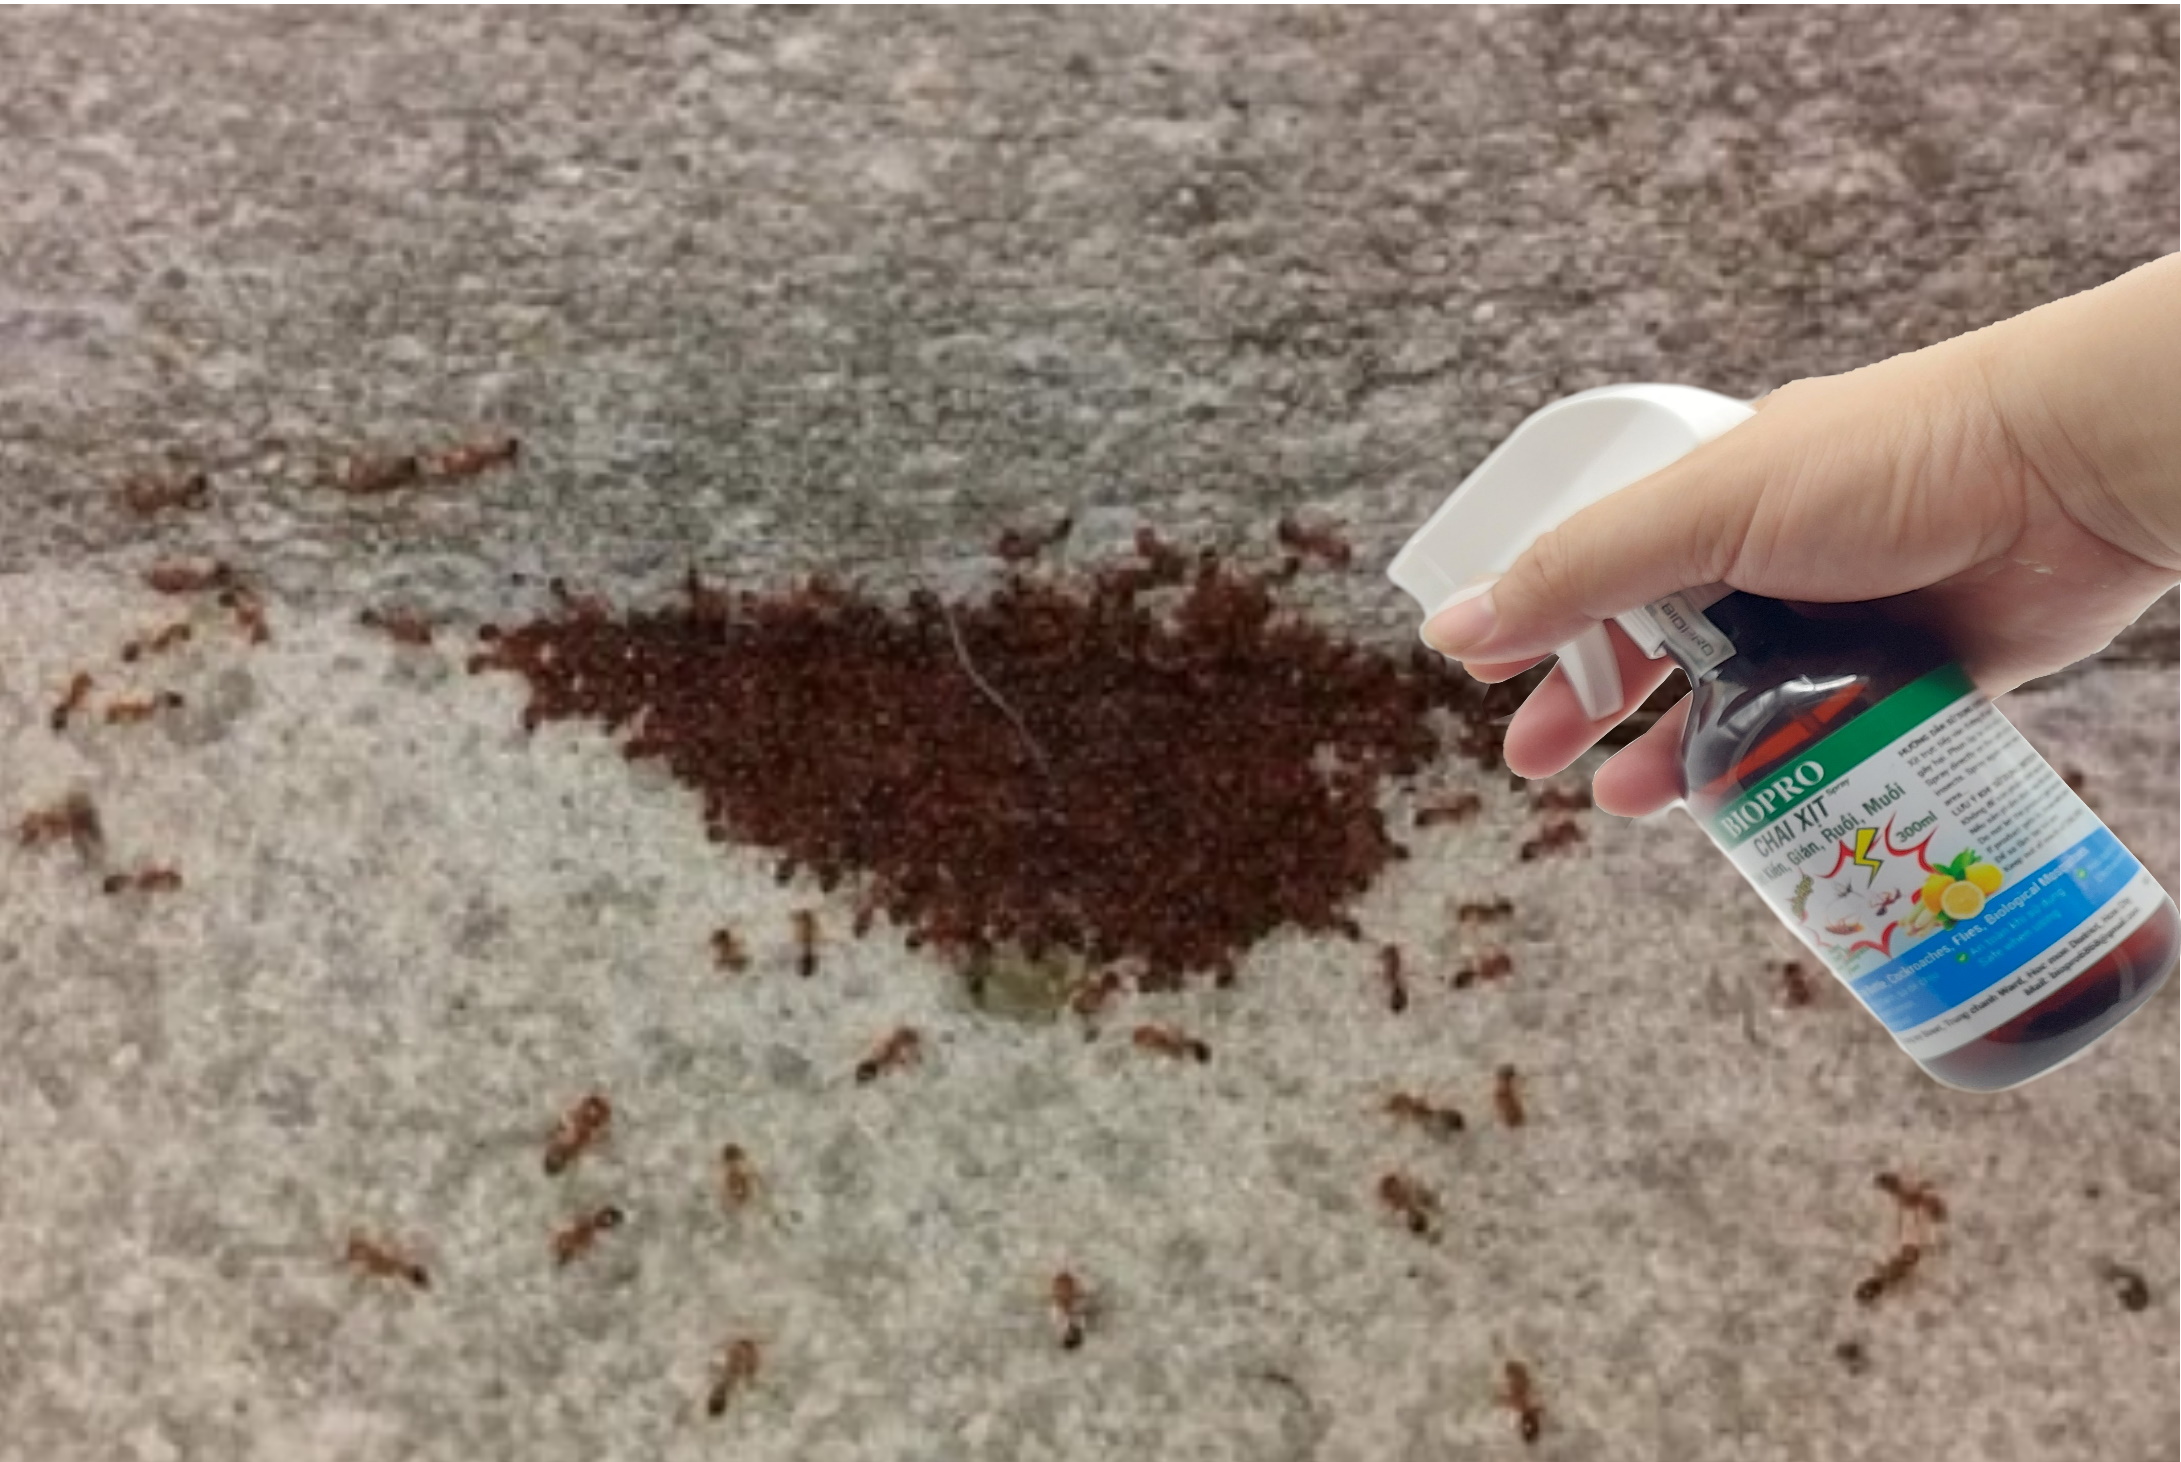 Chai xịt diệt kiến gián ruồi muỗi Sinh học Biopro Hương chanh sả Chai 300ml Diệt sạch côn trùng gây hại An toàn Hiệu quả